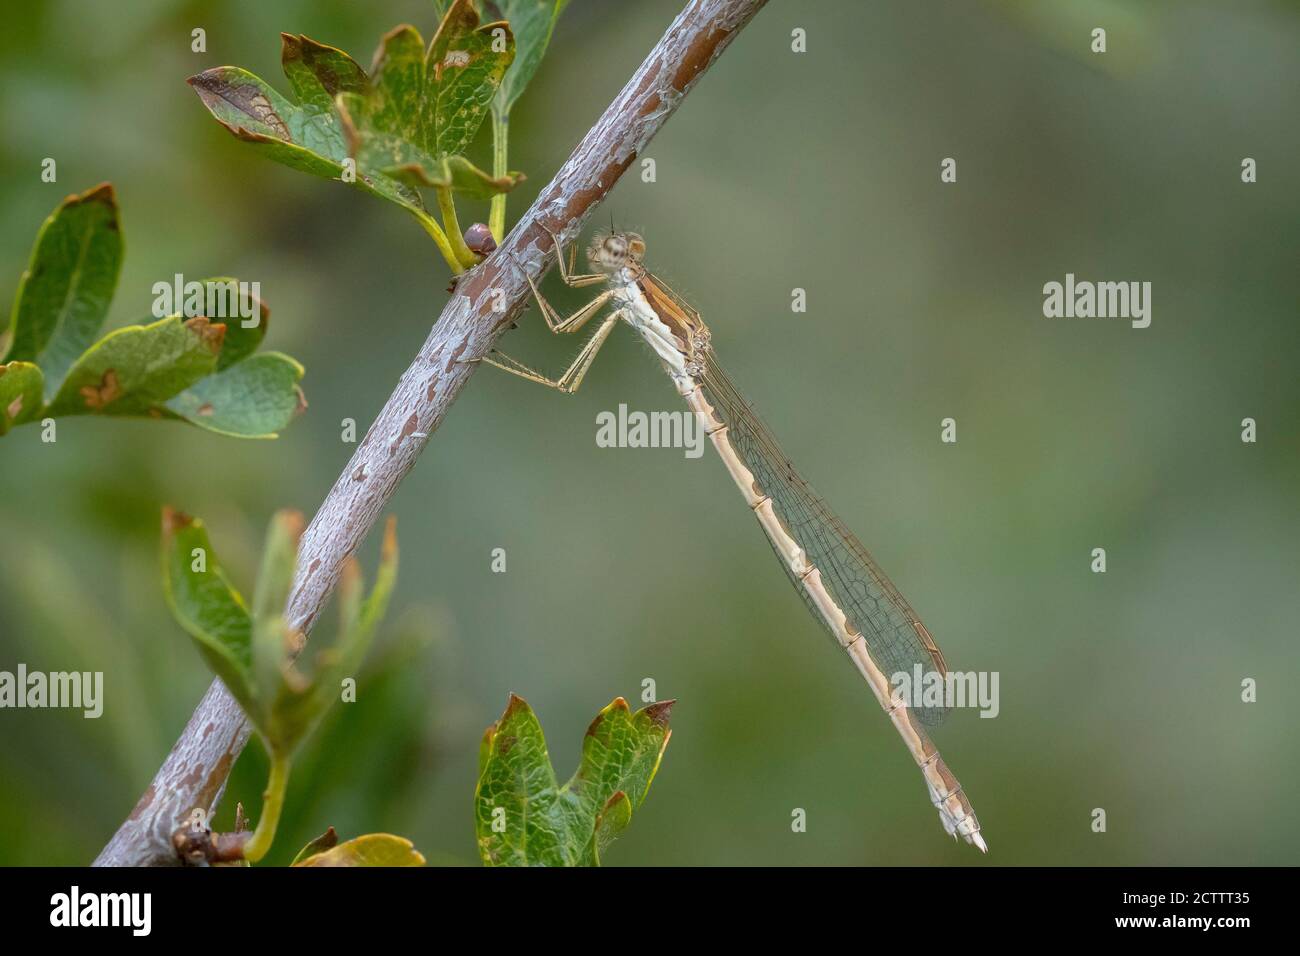 Común invierno damselfly macho, Sympema fusca, descansando sobre un tallo. Se pueden encontrar durante todo el año ya que durante el invierno como un adulto. Foto de stock